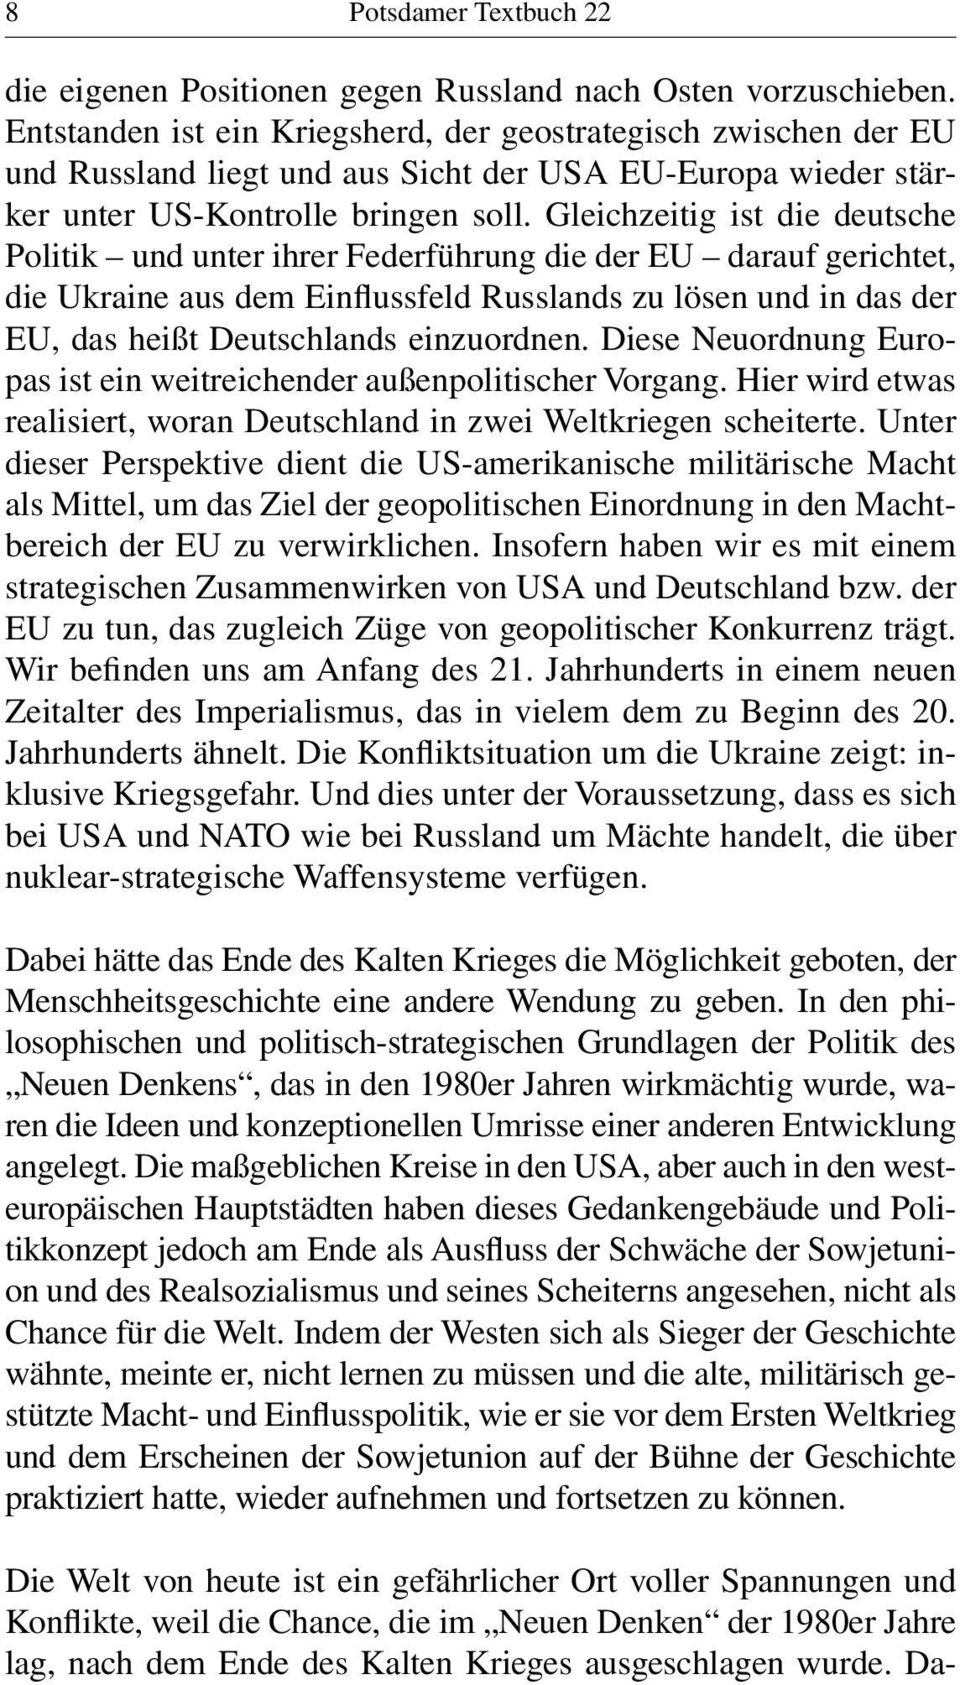 Gleichzeitig ist die deutsche Politik und unter ihrer Federführung die der EU darauf gerichtet, die Ukraine aus dem Einflussfeld Russlands zu lösen und in das der EU, das heißt Deutschlands